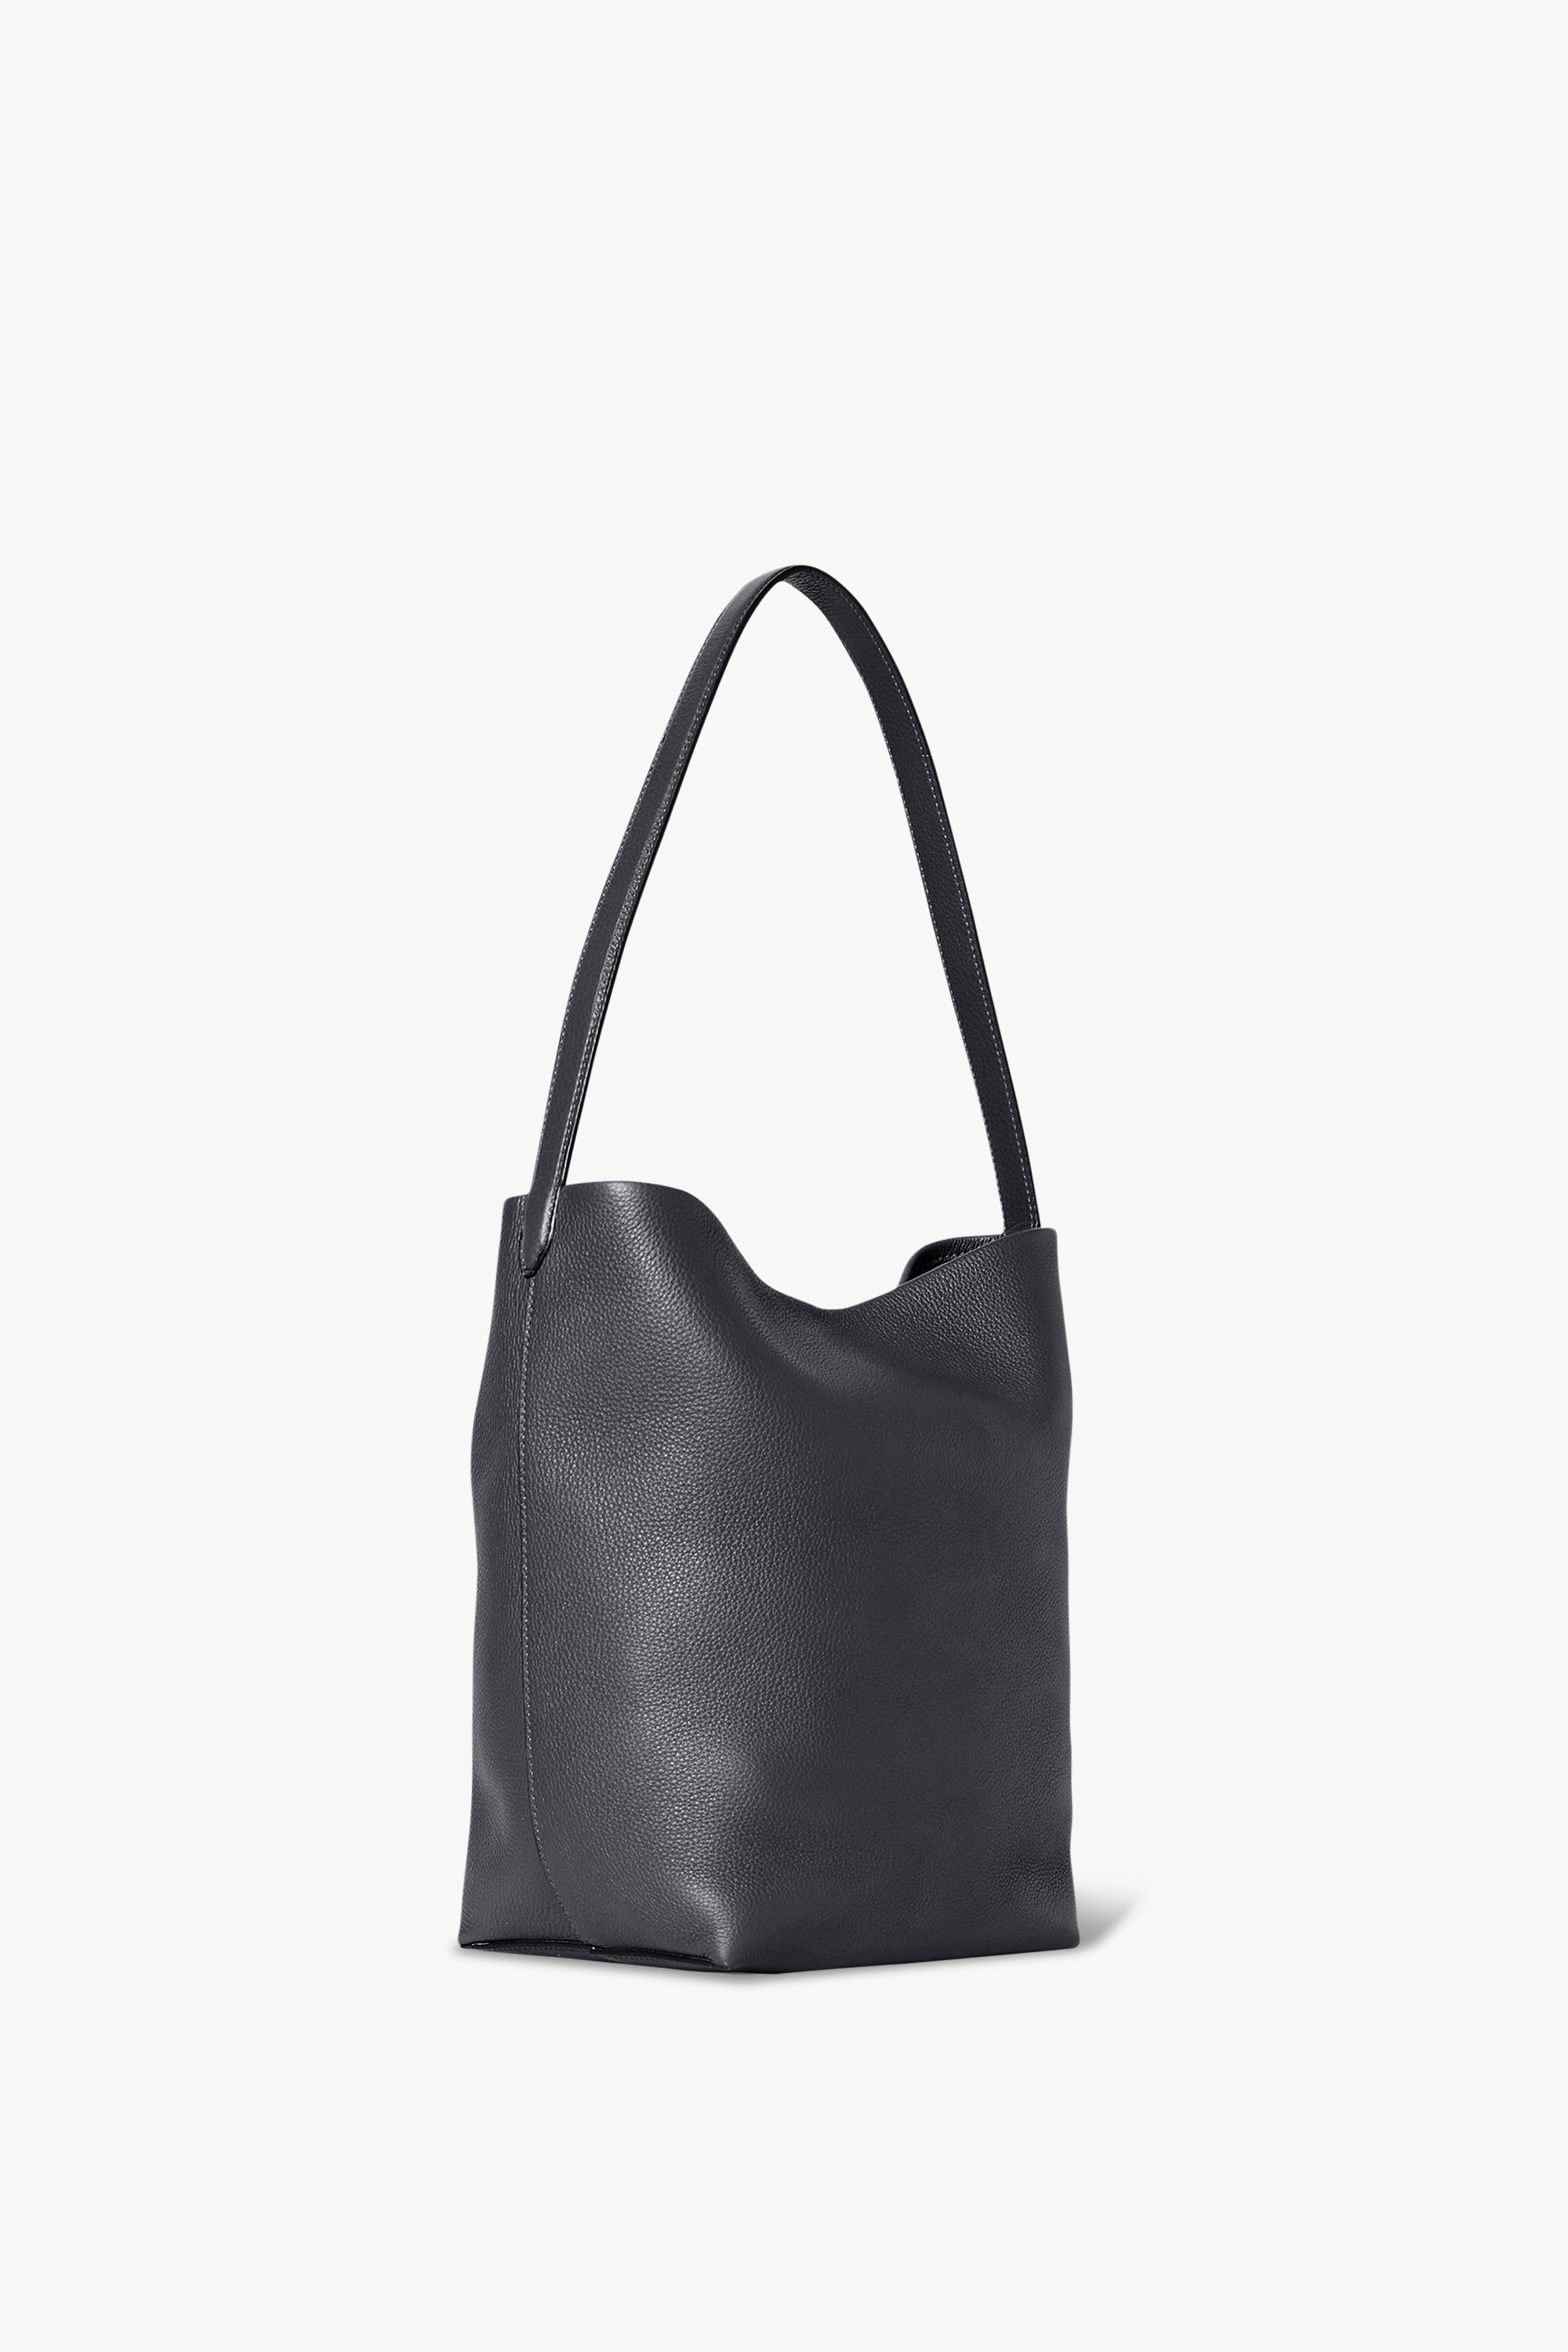 Medium N/S Park Tote Bag in Leather - 2